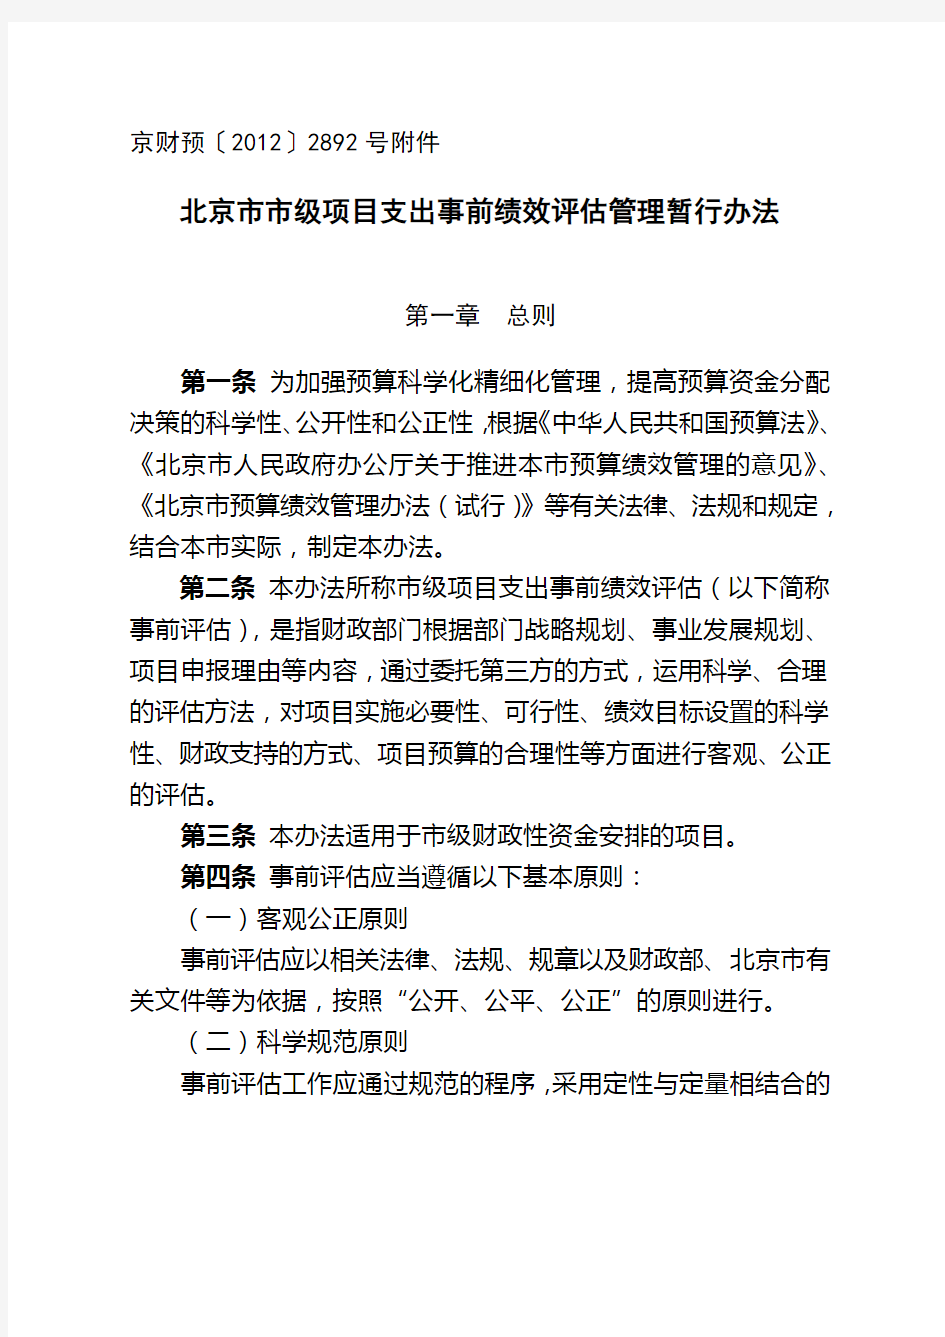 北京市市级项目支出事前绩效评估管理暂行办法